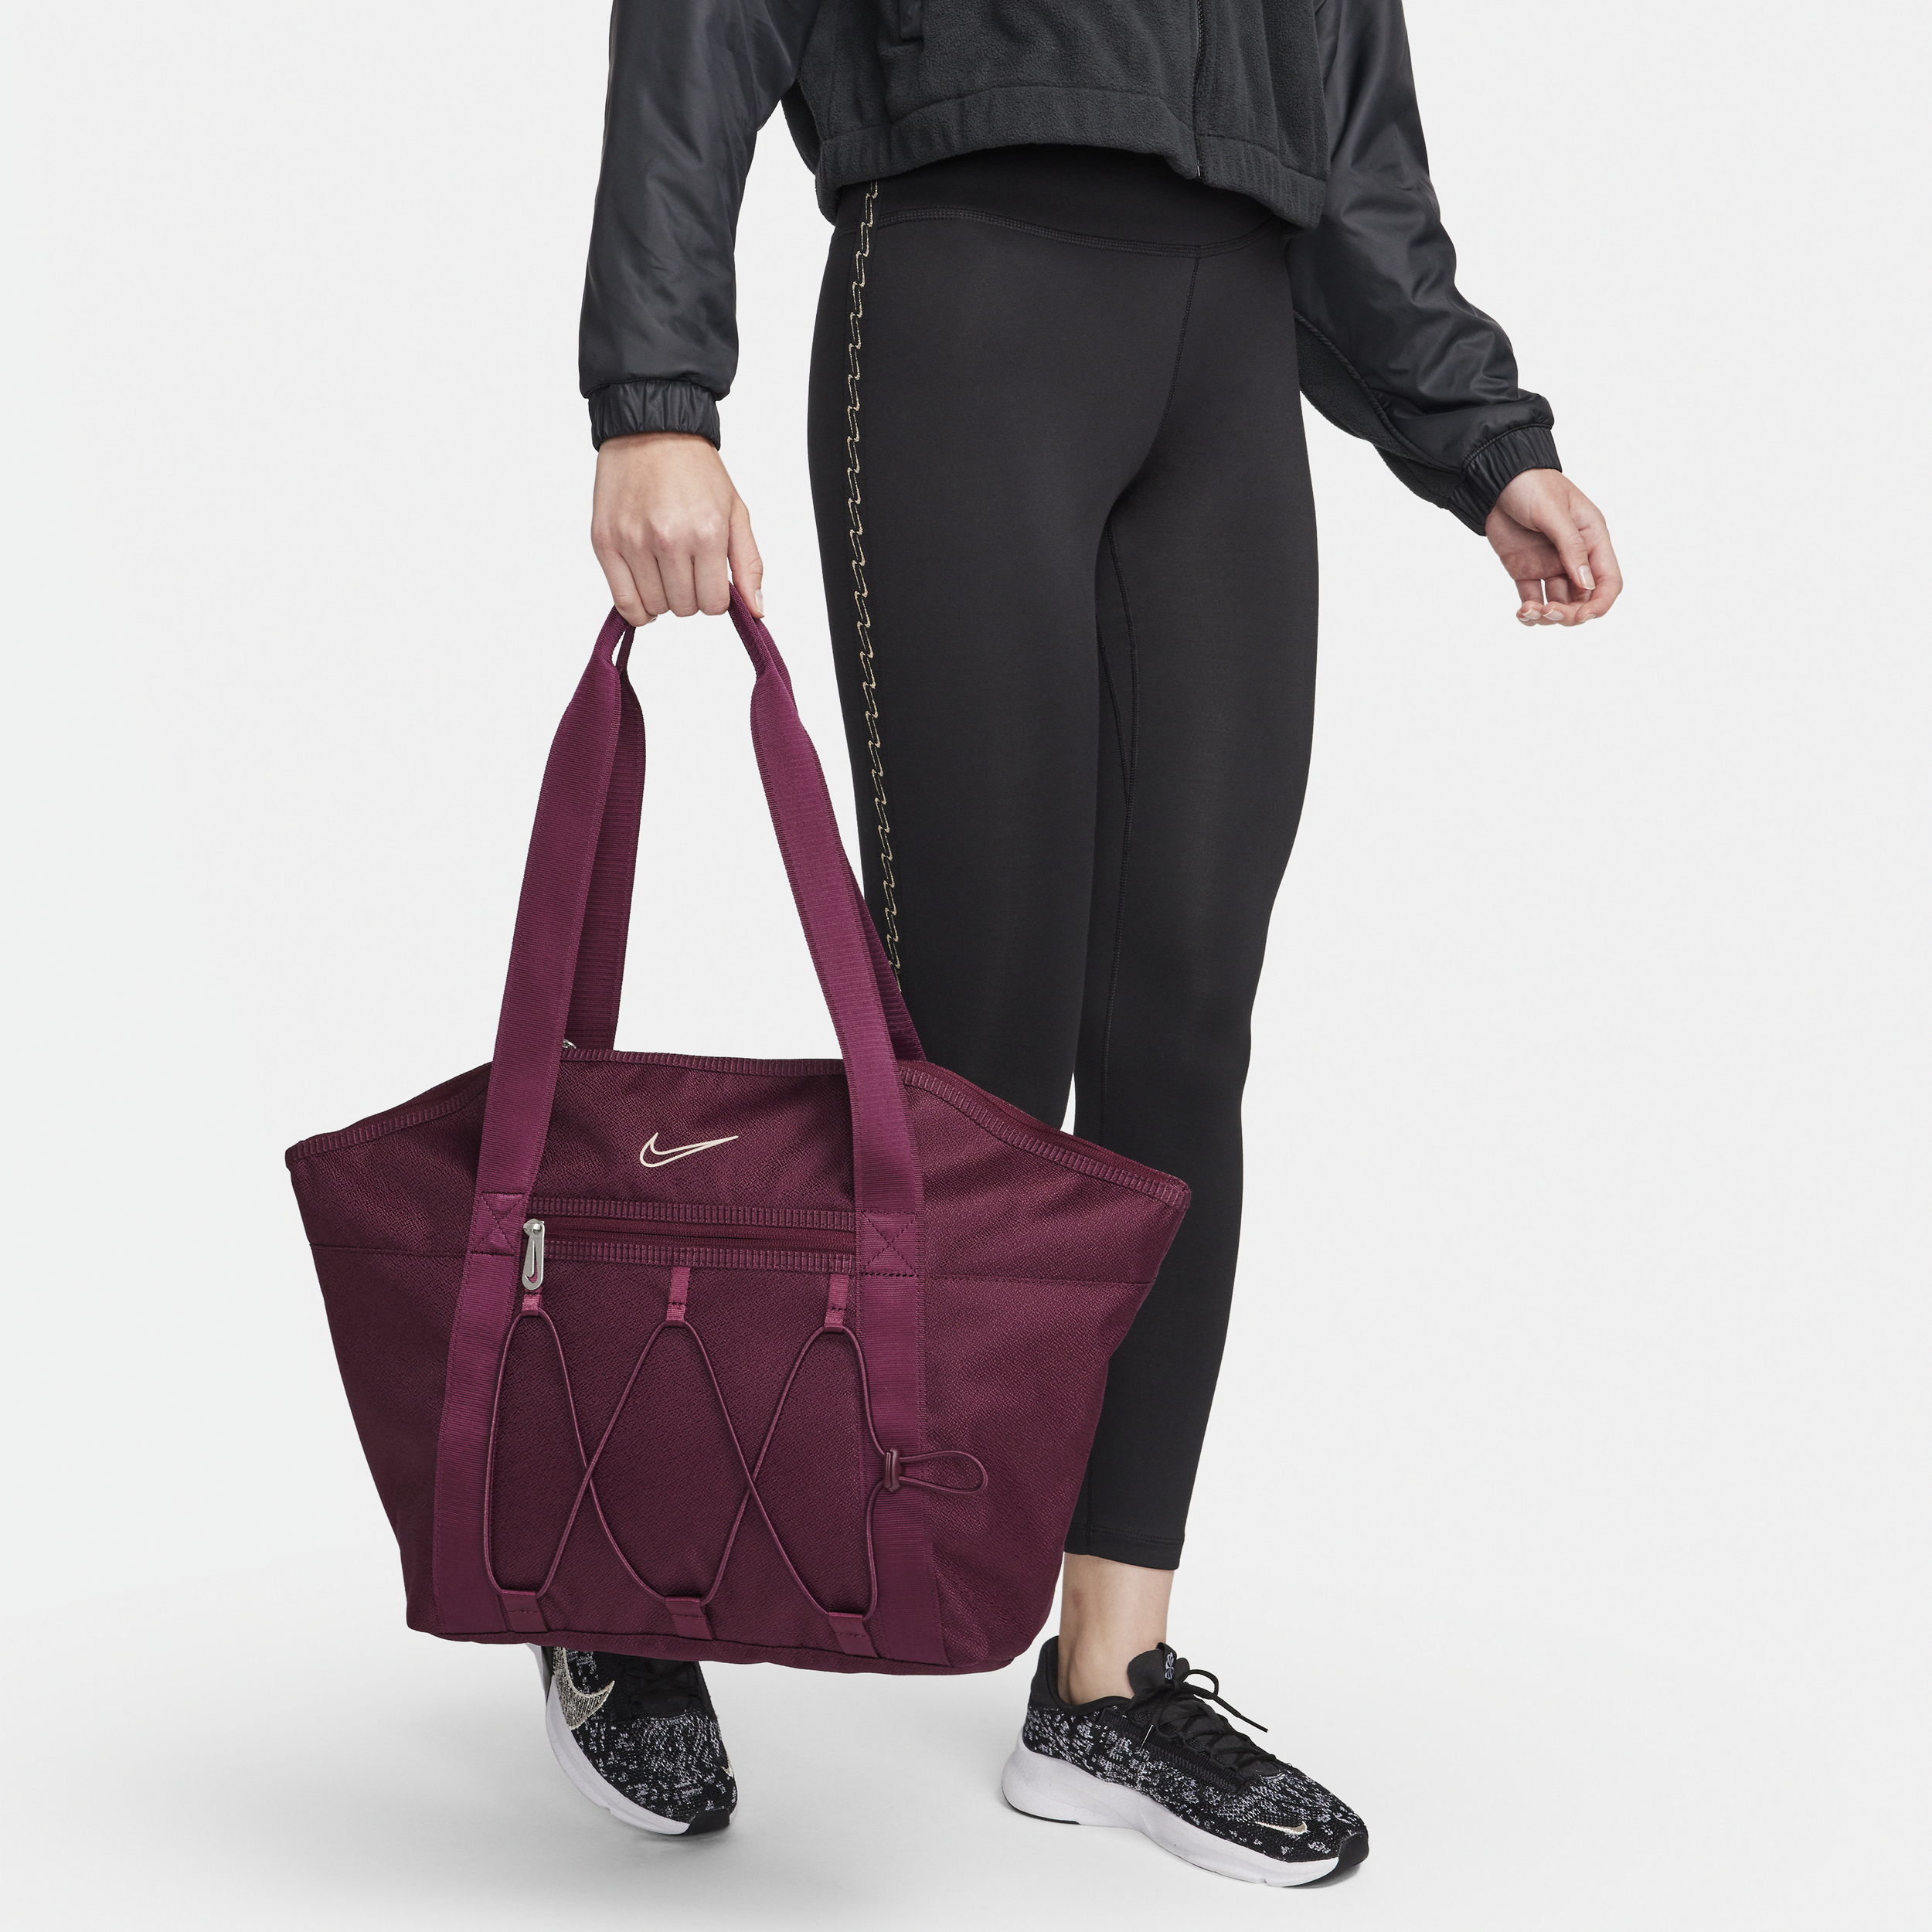 Nike One-træningsmulepose til kvinder (18 liter) - rød